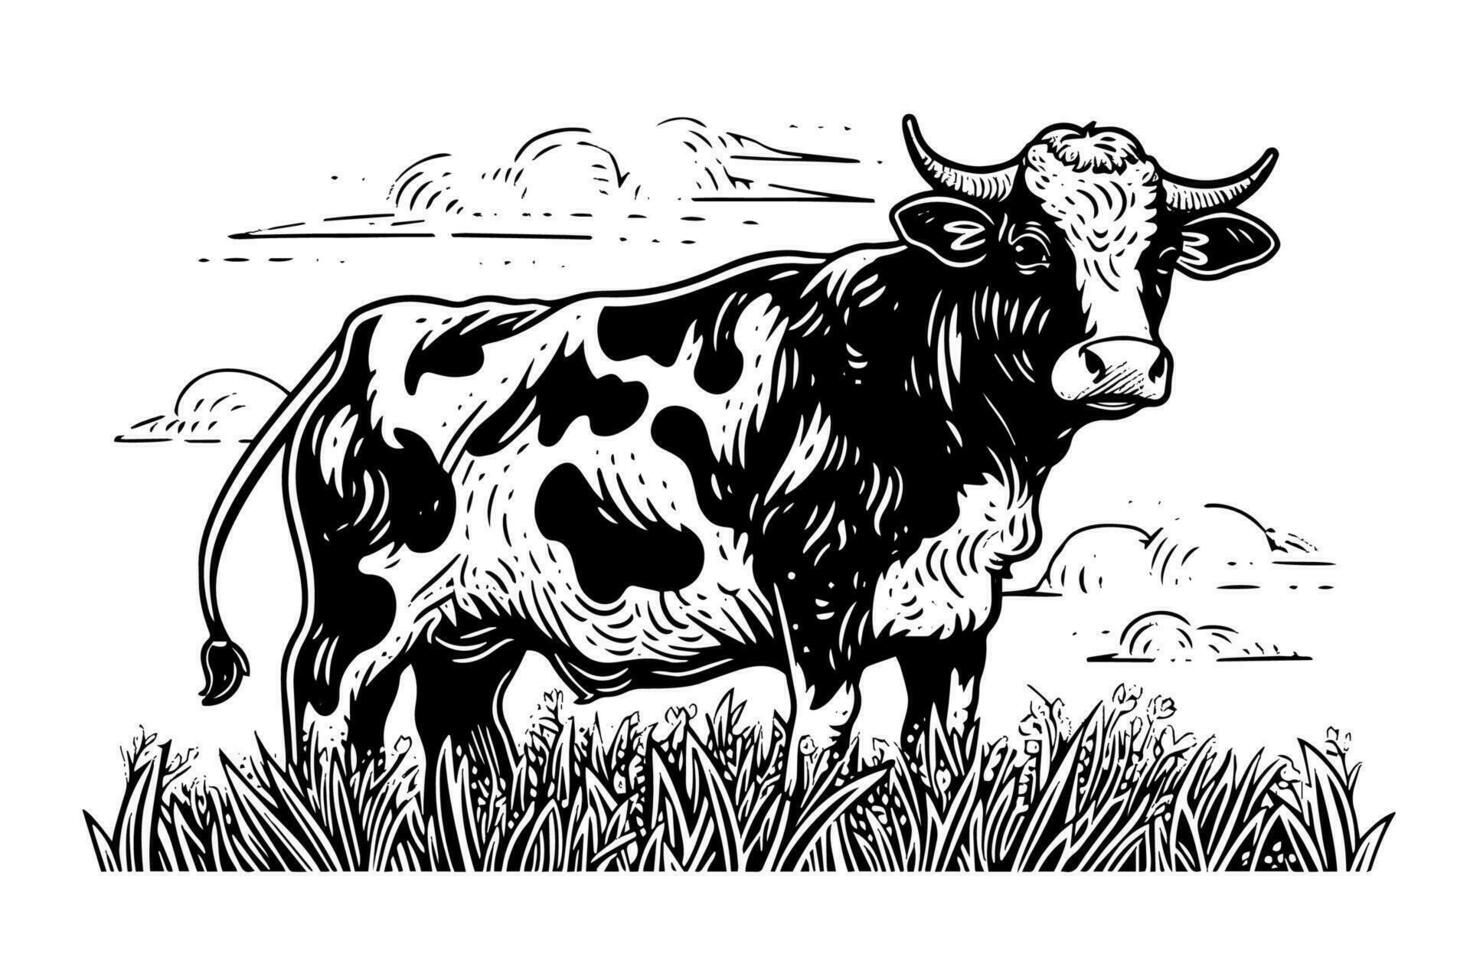 mucca sfiora nel il campo. vettore mano disegnato incisione stile illustrazione.